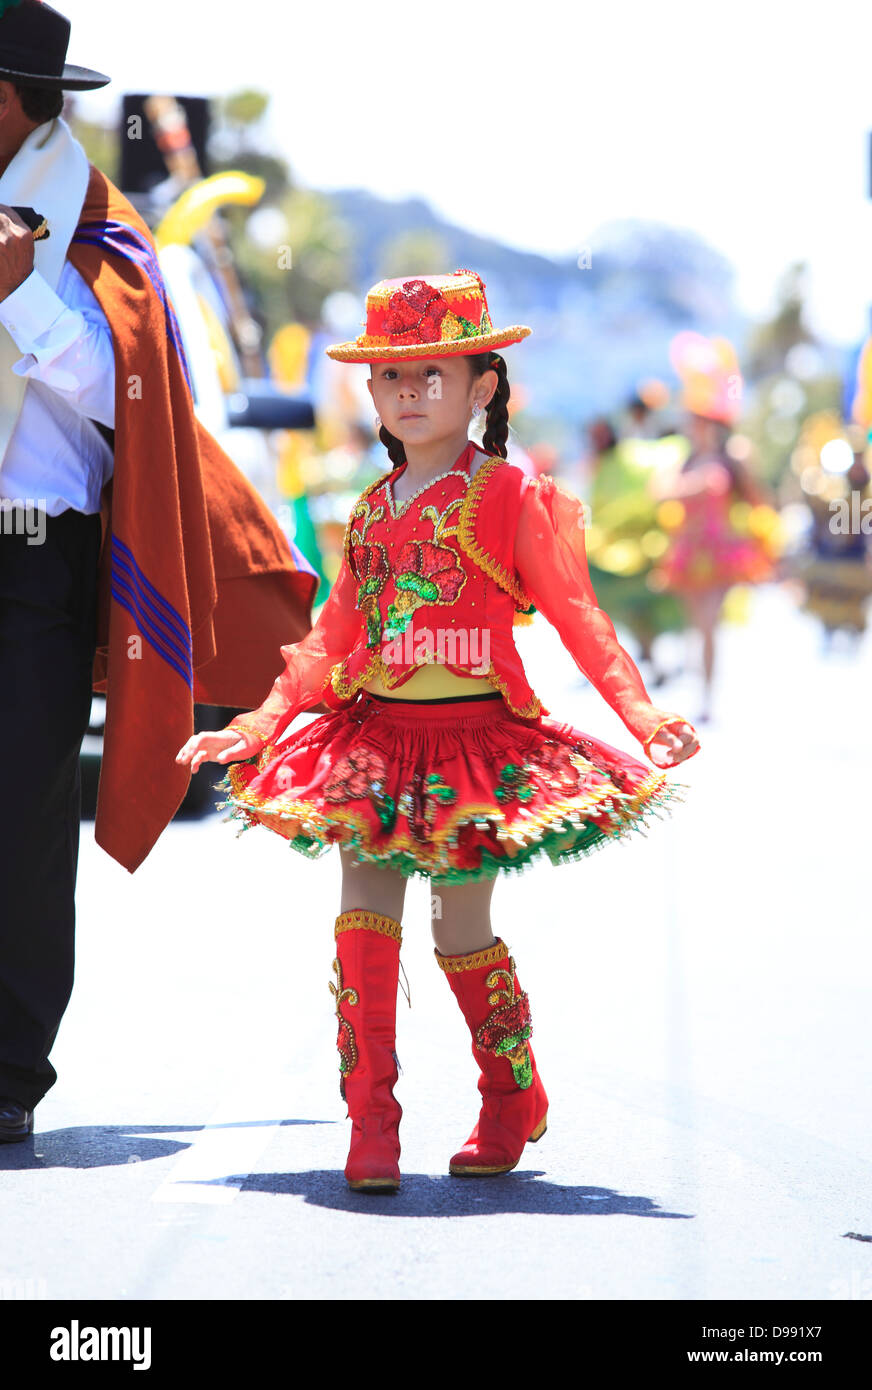 Una niña en el tradicional desfile de disfraces boliviano durante el  Carnaval en el Mission District de San Francisco, California, EE.UU  Fotografía de stock - Alamy